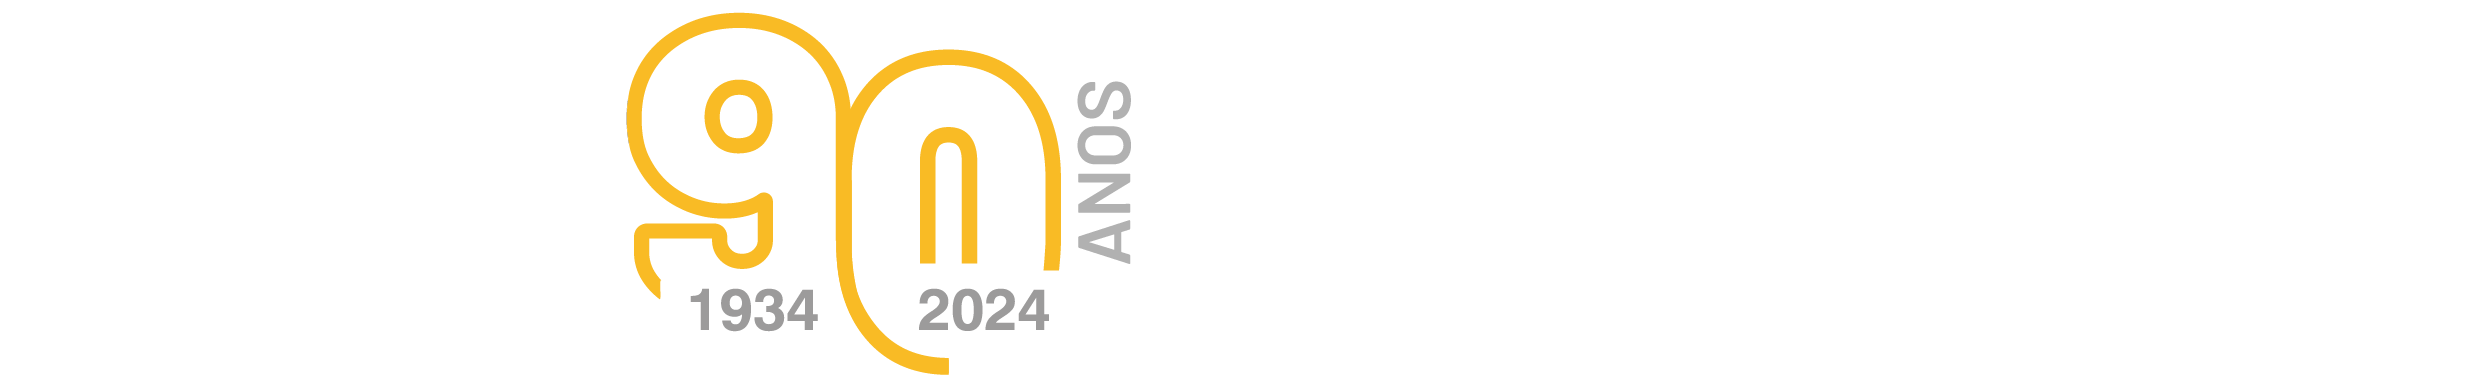 Marca da Universidade de São Paulo